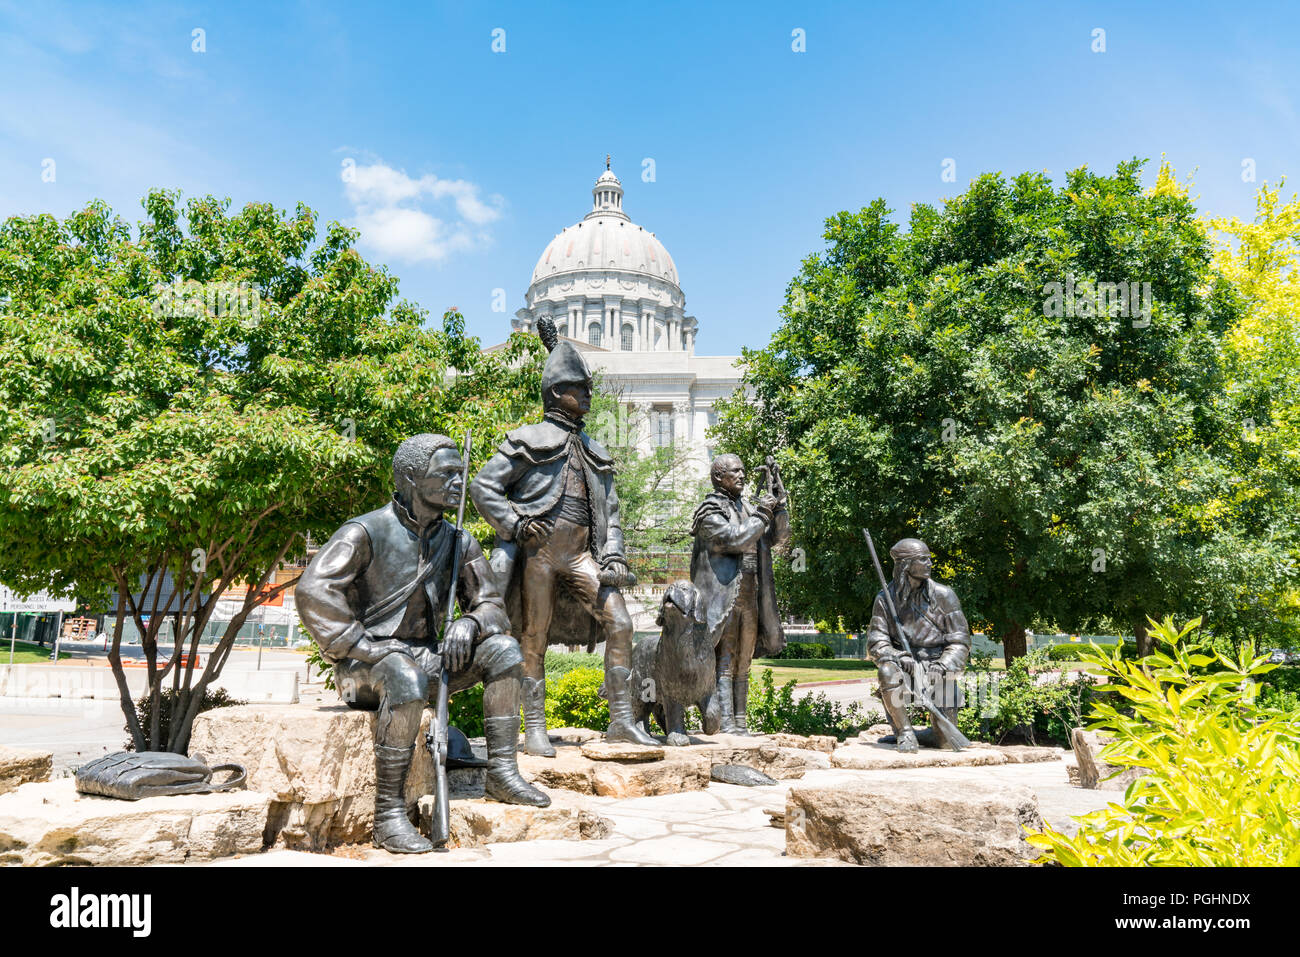 JEFFERSON CITY, MO - 20. JUNI 2018: Lewis und Clark Denkmal neben der Landeshauptstadt Gebäude in Jefferson City, Missouri Stockfoto